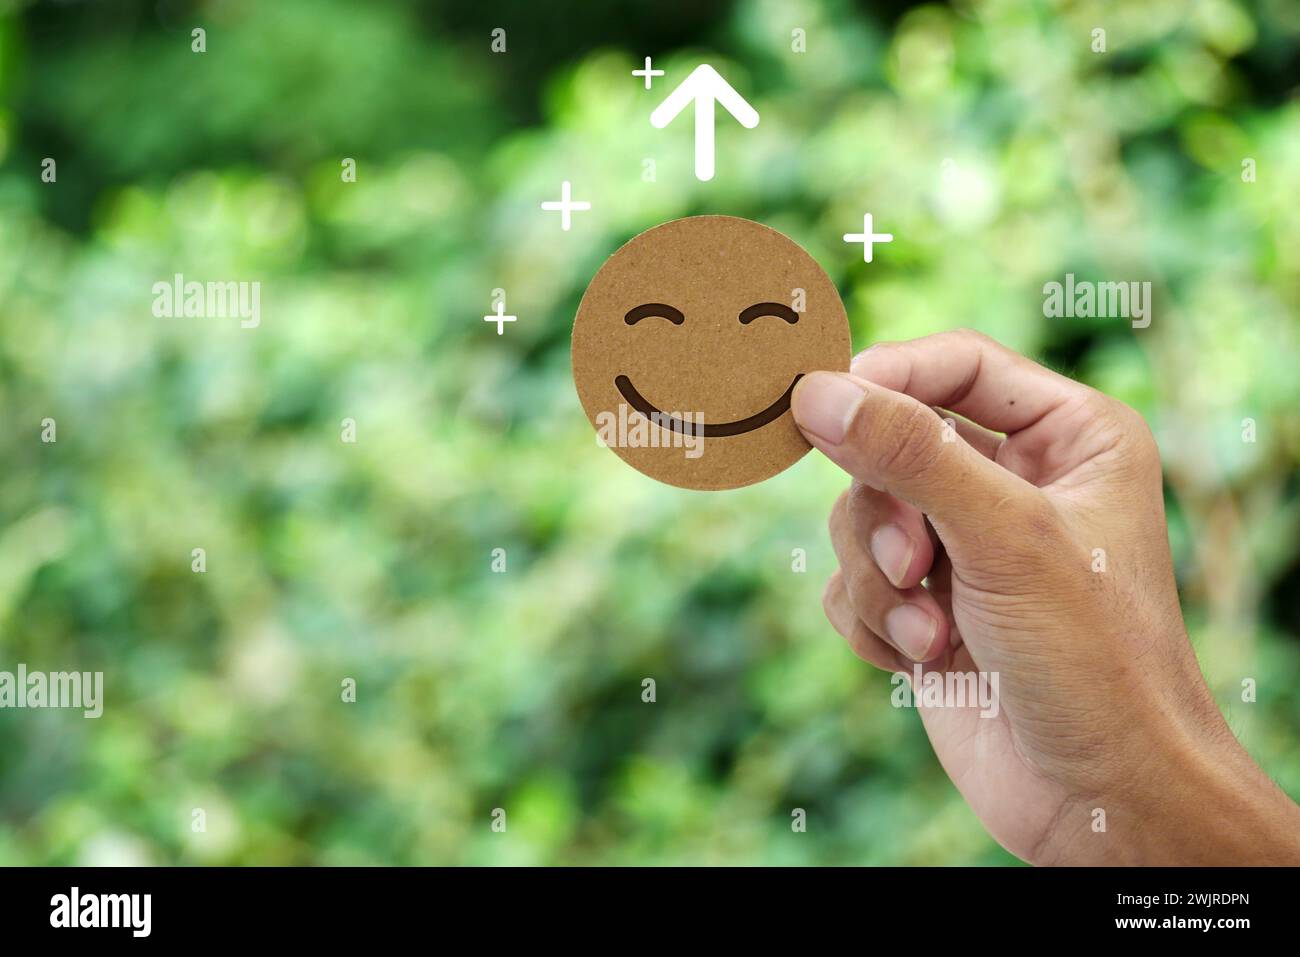 Die Hand hält Happy Smile-Gesichtskarte. Konzept des positiven Denkens, der psychischen Gesundheit, der emotionalen Erholung, der Wachstumseinstellung, der Glücksgefühle. Stockfoto